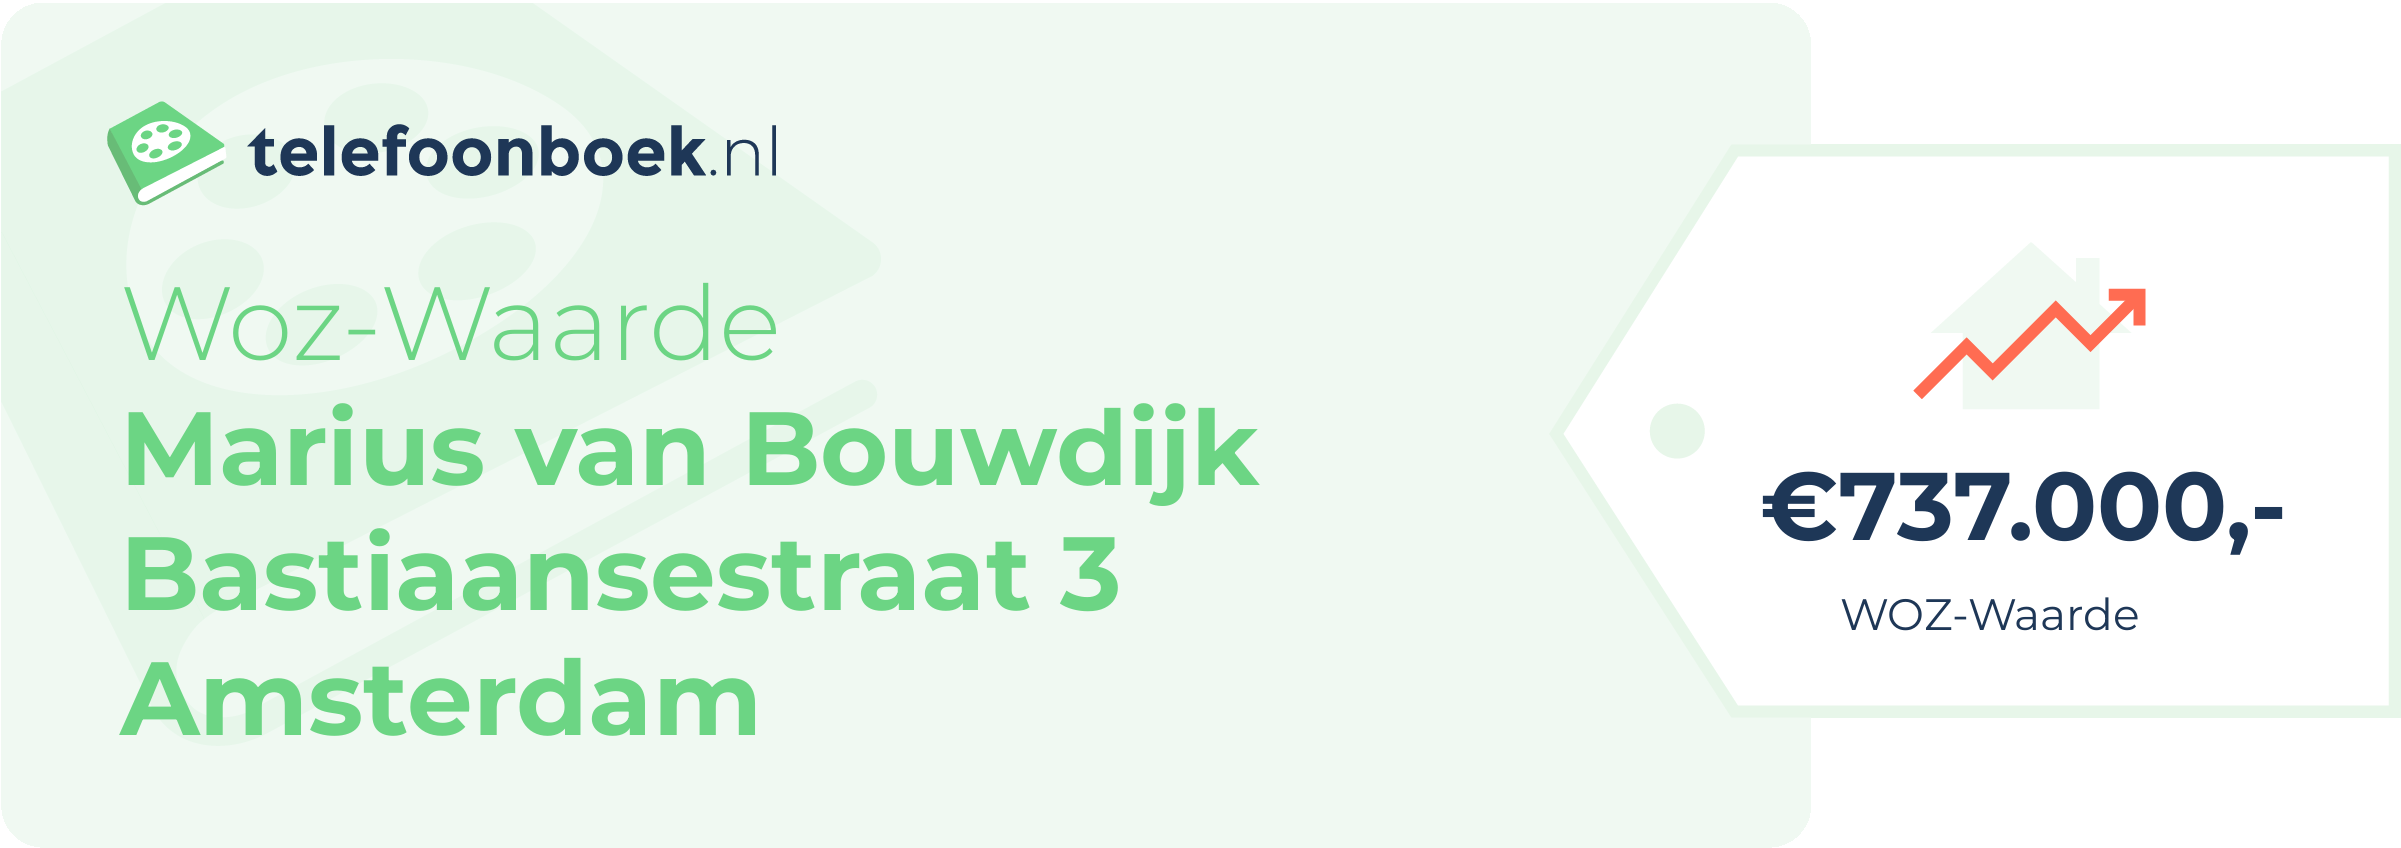 WOZ-waarde Marius Van Bouwdijk Bastiaansestraat 3 Amsterdam